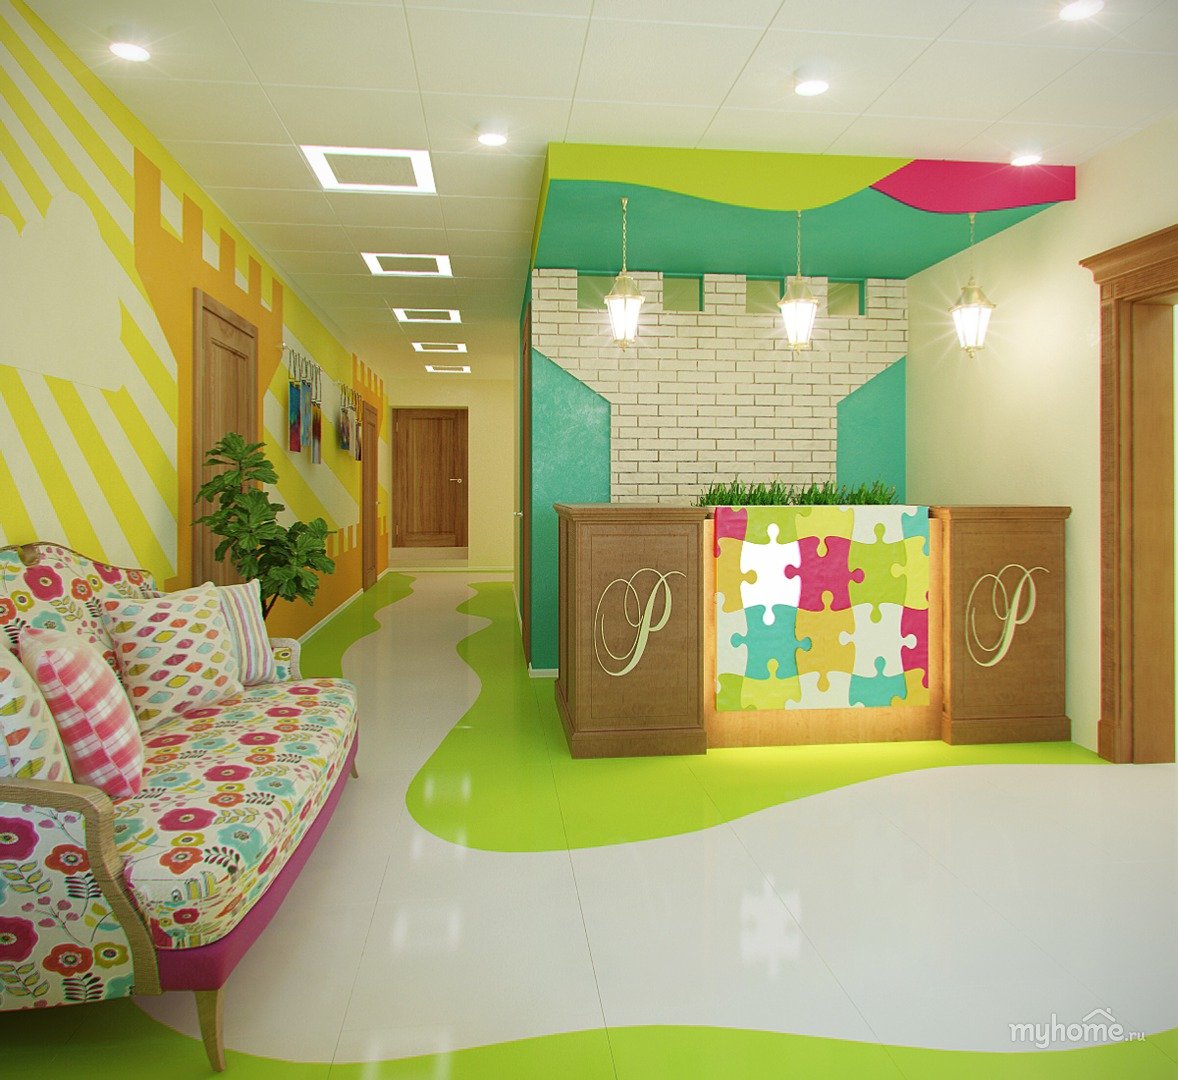 Дизайн детского центра развития